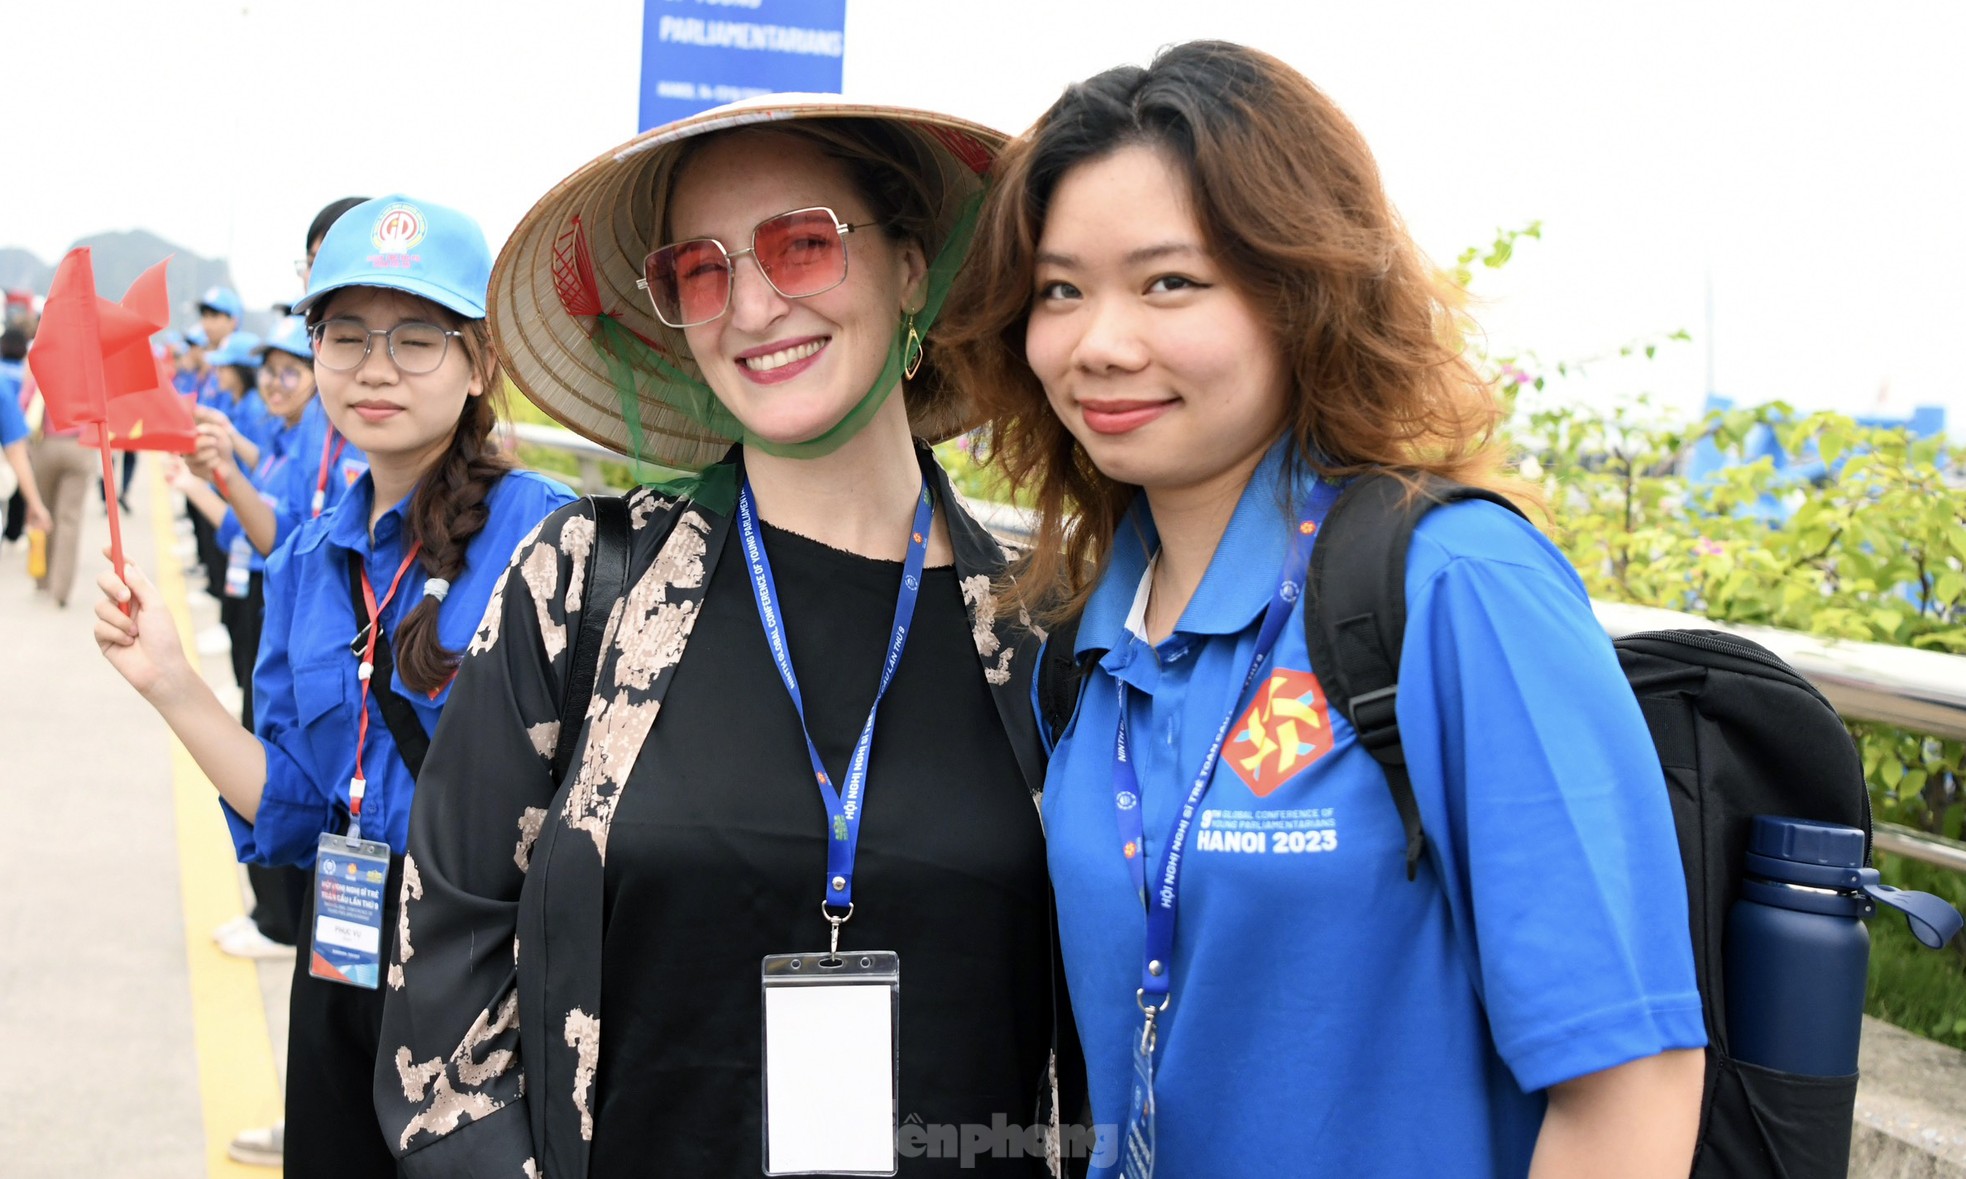 Đại biểu Nghị sĩ trẻ toàn cầu đội nón lá, trải nghiệm đàn bầu trong hành trình khám phá Vịnh Hạ Long ảnh 4